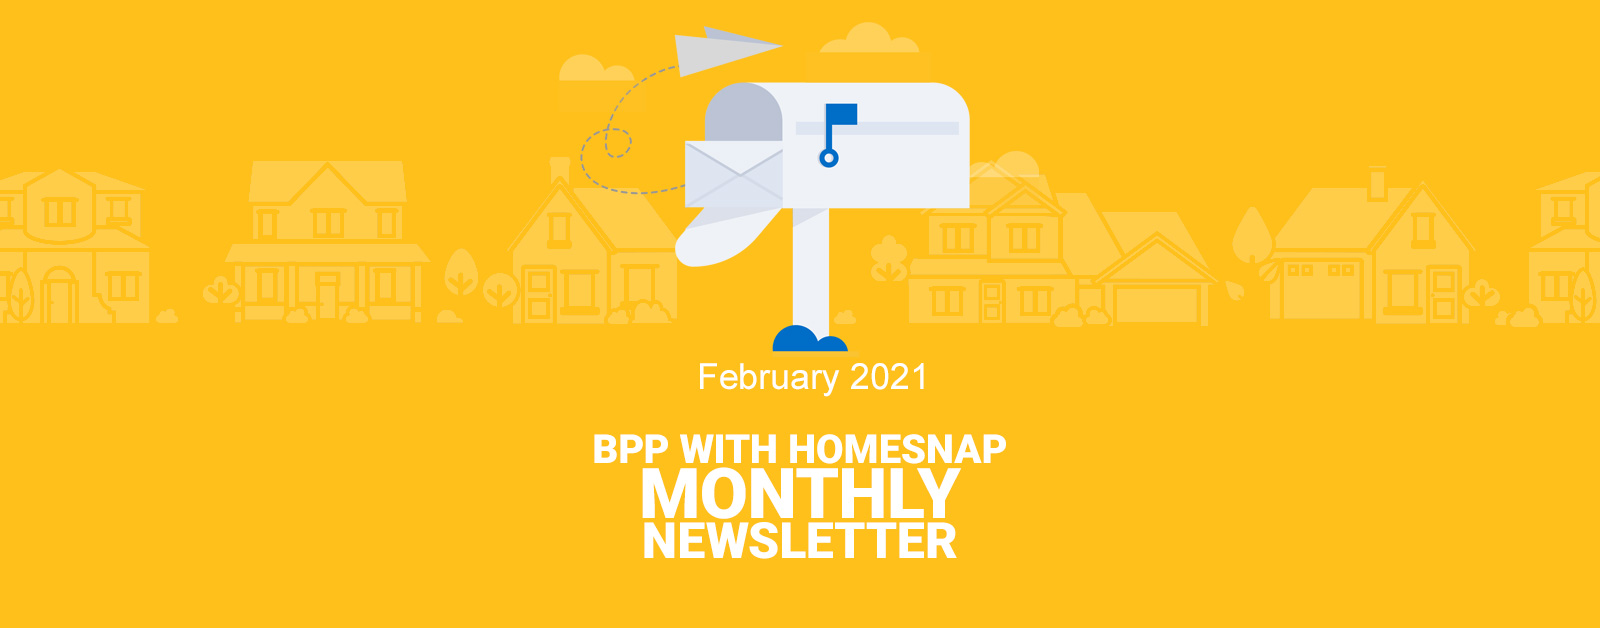 Feb 2021 BPP Newsletter